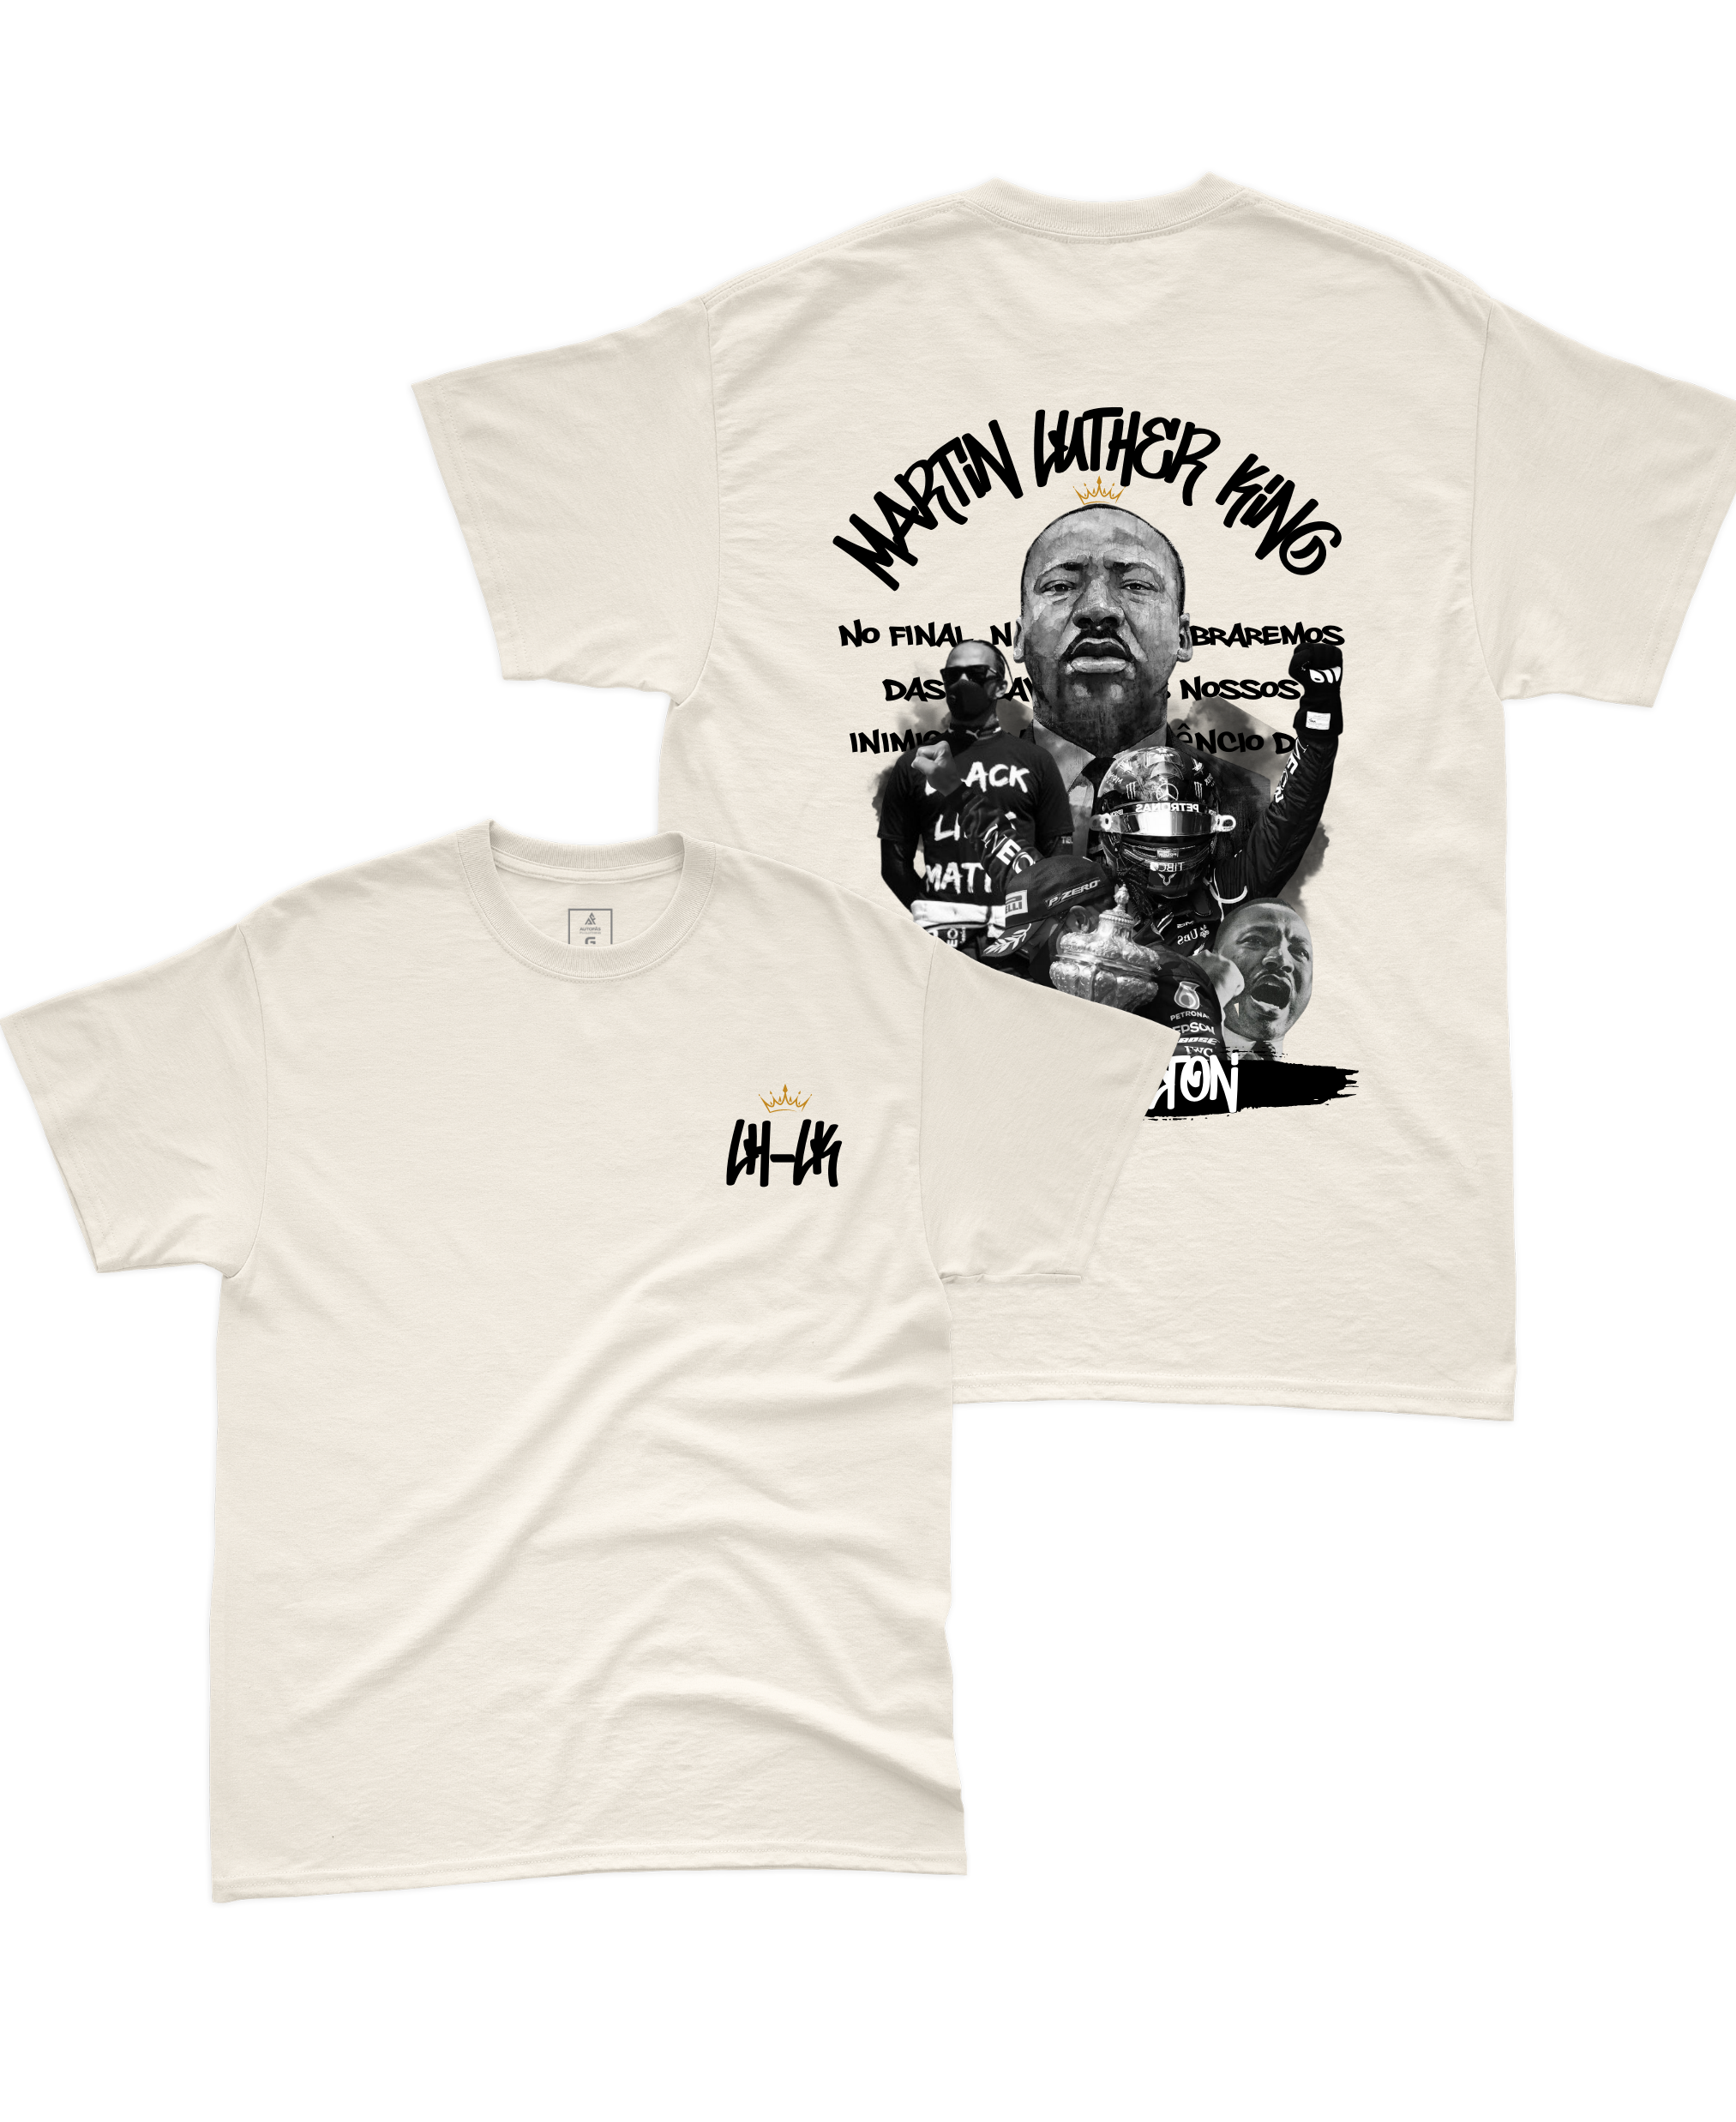 Camiseta Lewis Hamilton e Luther King Edição Limitada